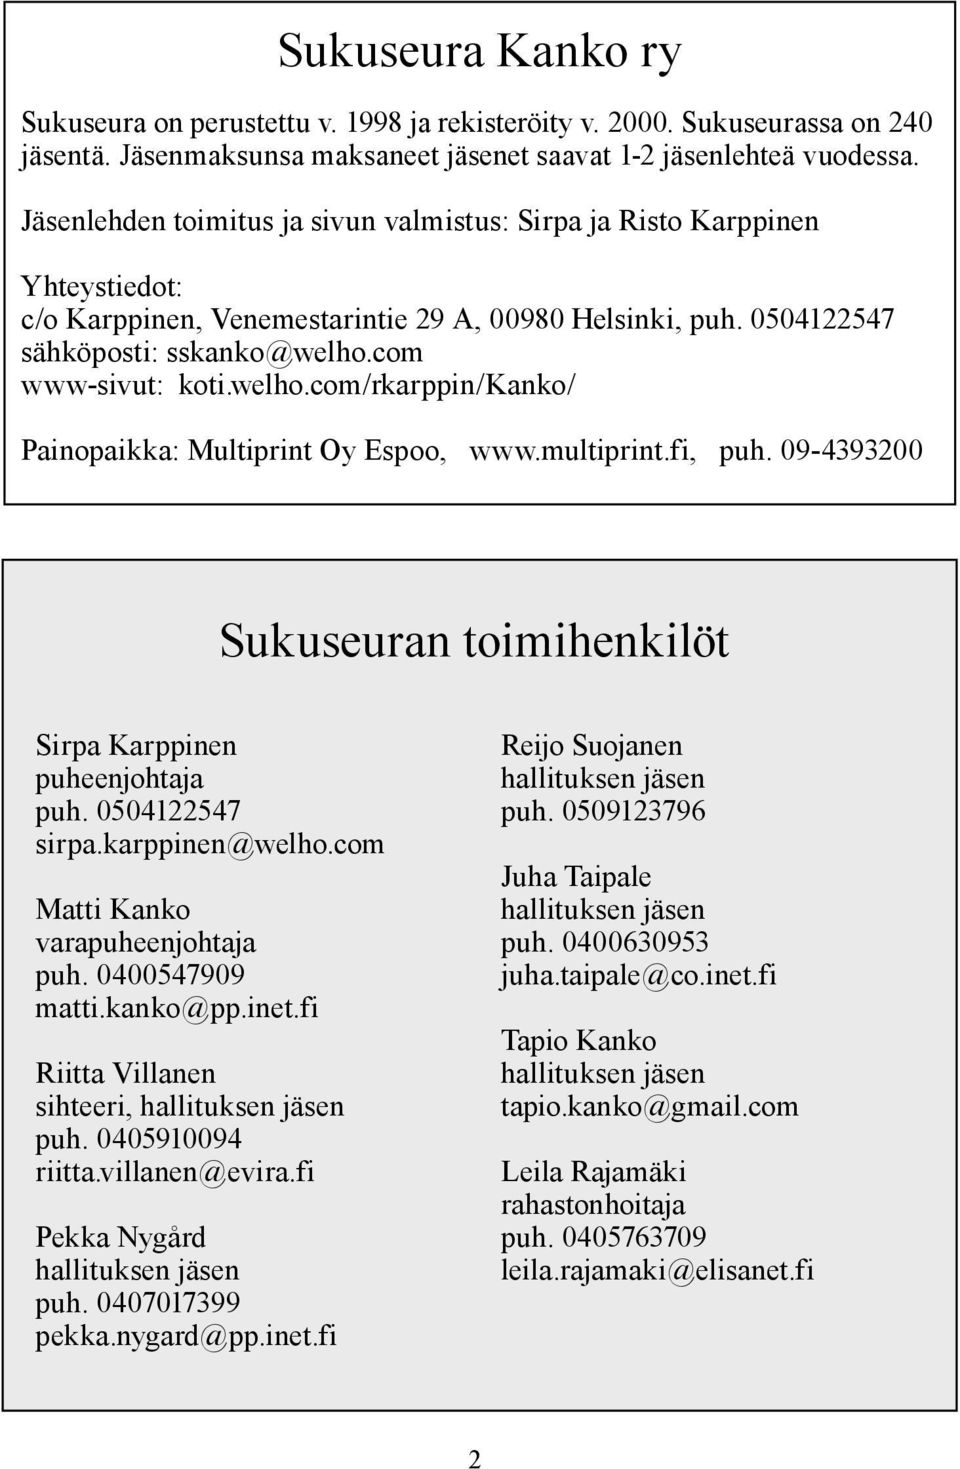 welho.com/rkarppin/kanko/ Painopaikka: Multiprint Oy Espoo, www.multiprint.fi, puh. 09-4393200 Sukuseuran toimihenkilöt Sirpa Karppinen puheenjohtaja puh. 0504122547 sirpa.karppinen@welho.